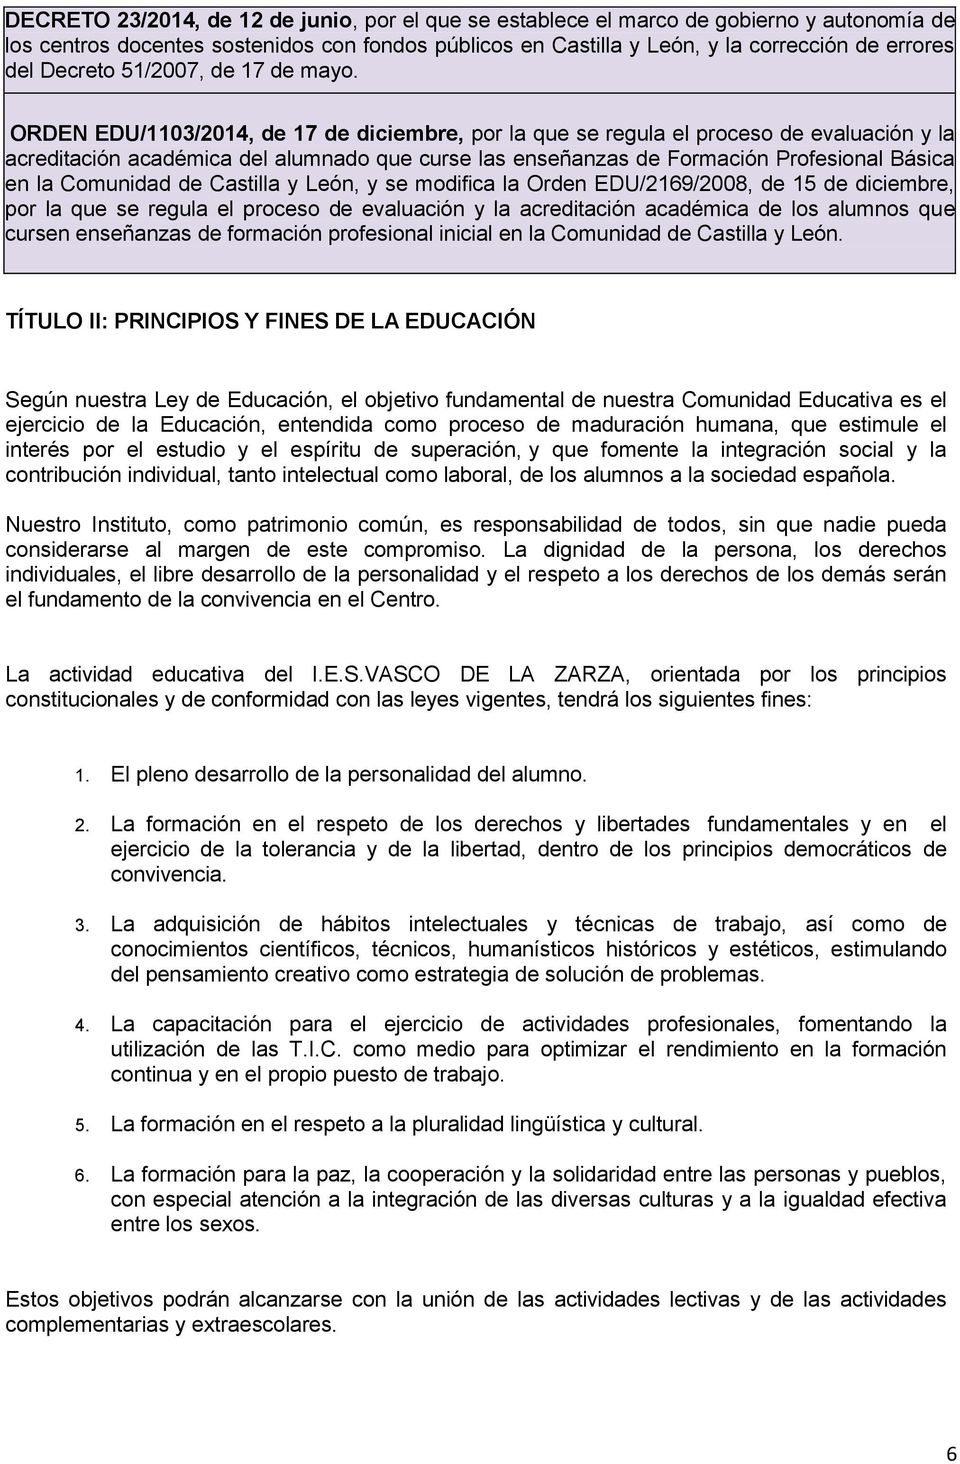 ORDEN EDU/1103/2014, de 17 de diciembre, por la que se regula el proceso de evaluación y la acreditación académica del alumnado que curse las enseñanzas de Formación Profesional Básica en la